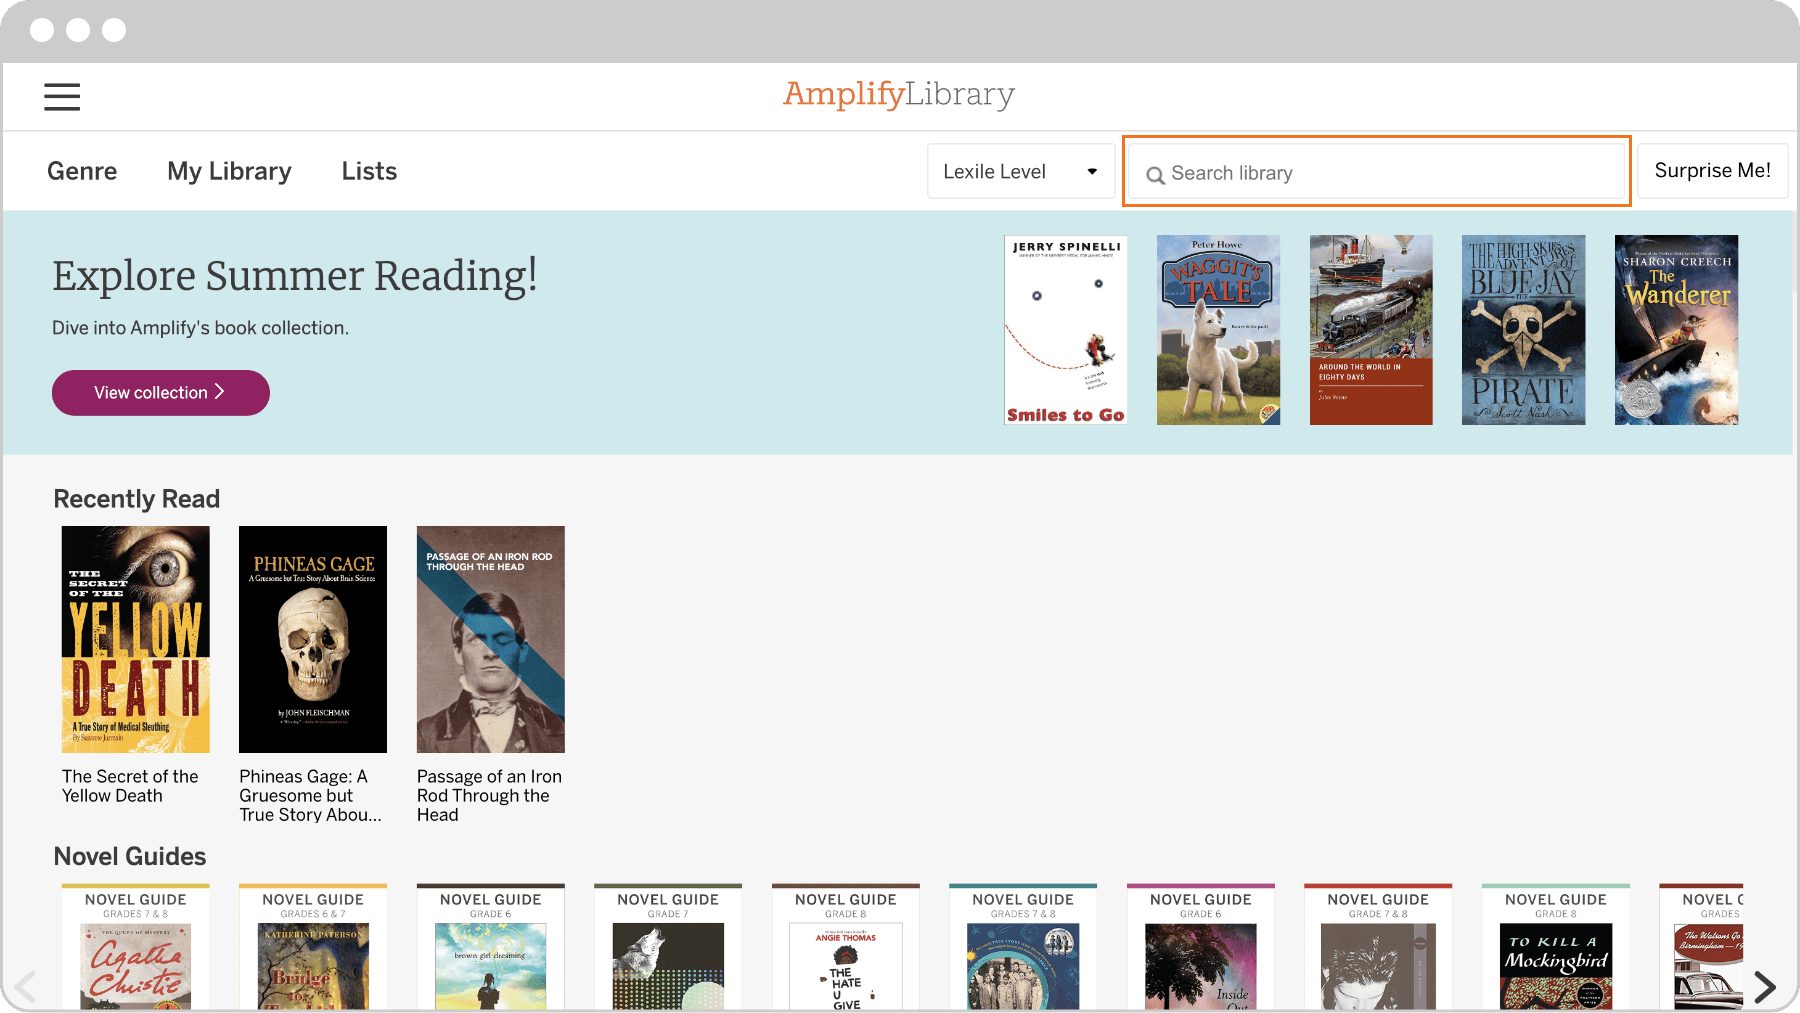 Una interfaz de biblioteca digital que muestra un menú y una selección de portadas de libros en categorías como 